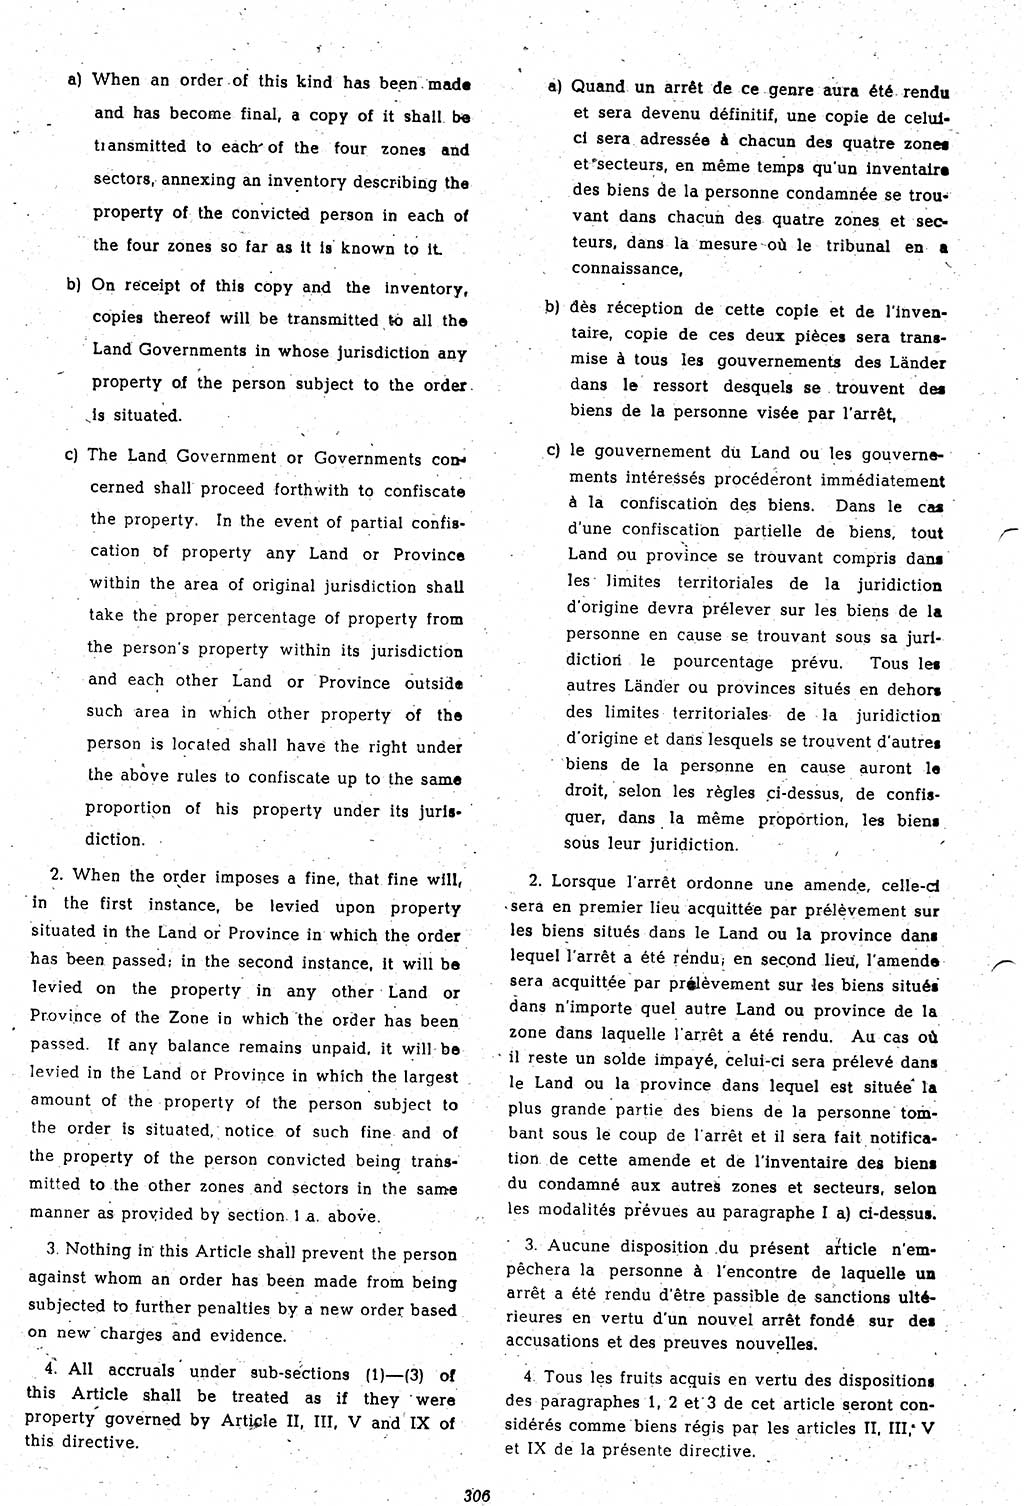 Amtsblatt des Kontrollrats (ABlKR) in Deutschland 1948, Seite 306/1 (ABlKR Dtl. 1948, S. 306/1)